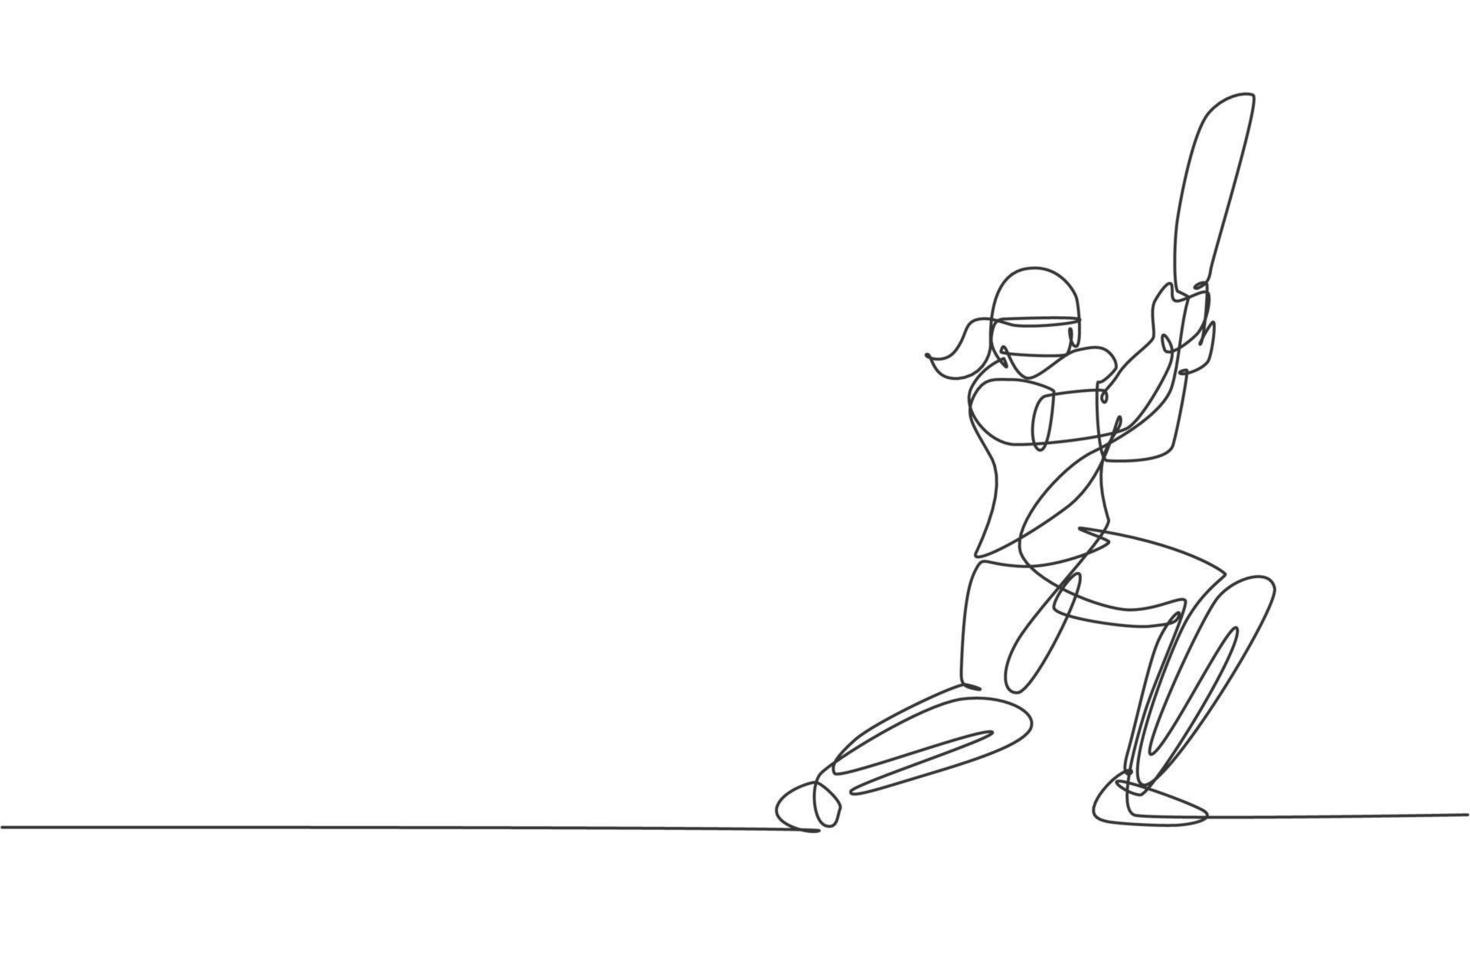 un disegno a linea continua della messa a fuoco del giocatore di cricket della giovane donna felice per colpire la palla nell'illustrazione vettoriale del campo. concetto di sport competitivo. design dinamico a linea singola per poster pubblicitari